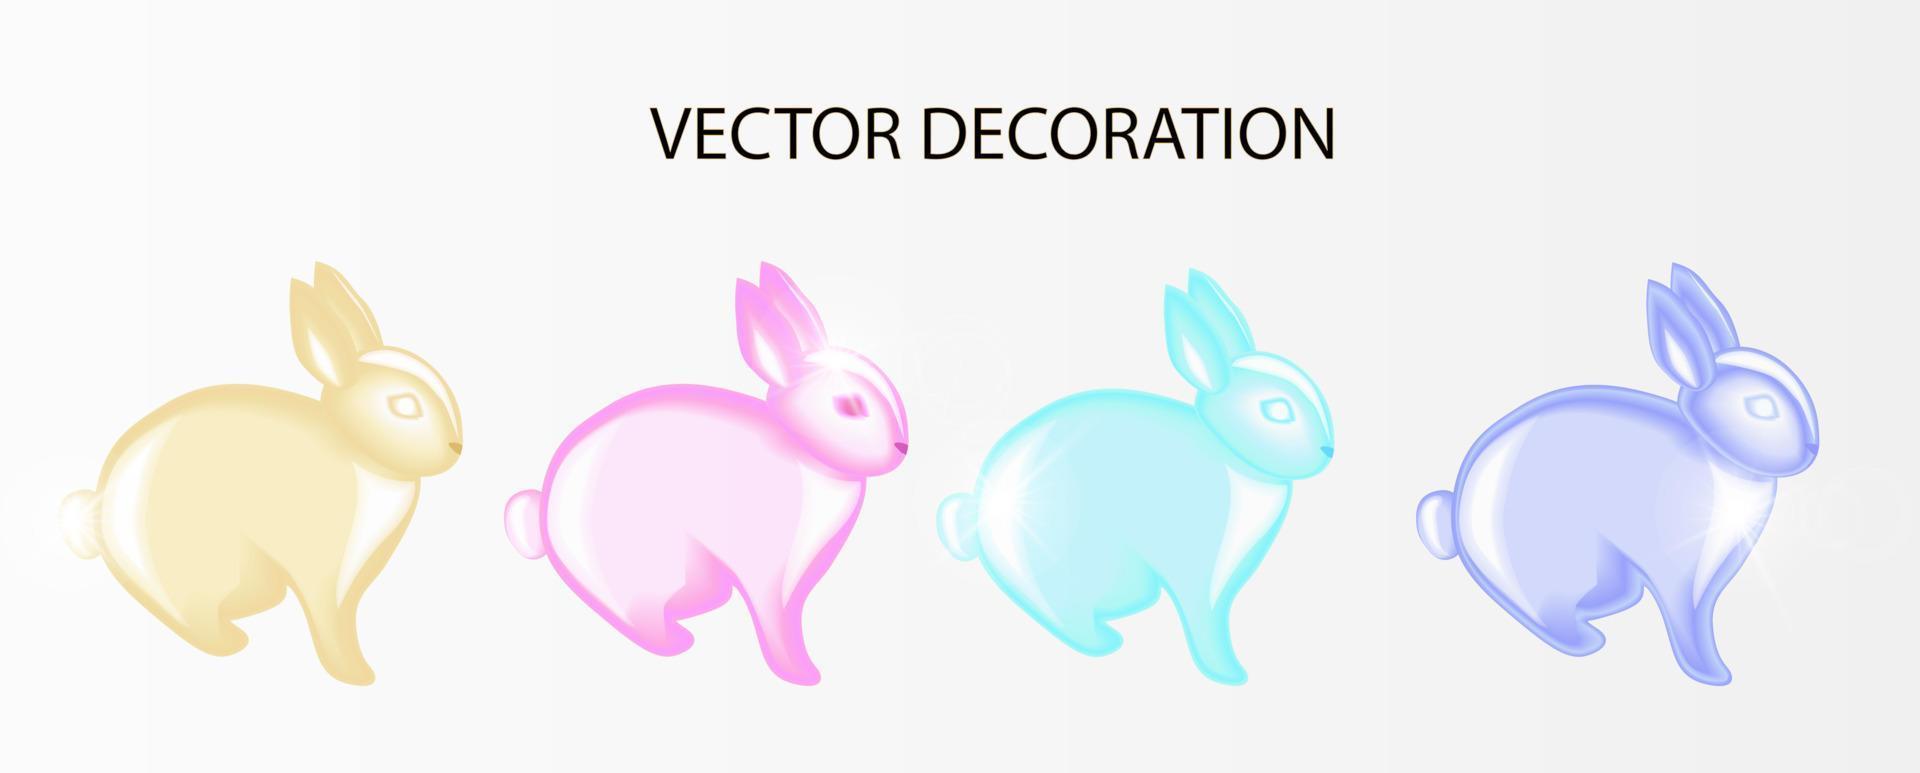 conejitos de pascua multicolores de vidrio. celebrando la pascua. elementos de diseño de vectores 3d realistas.